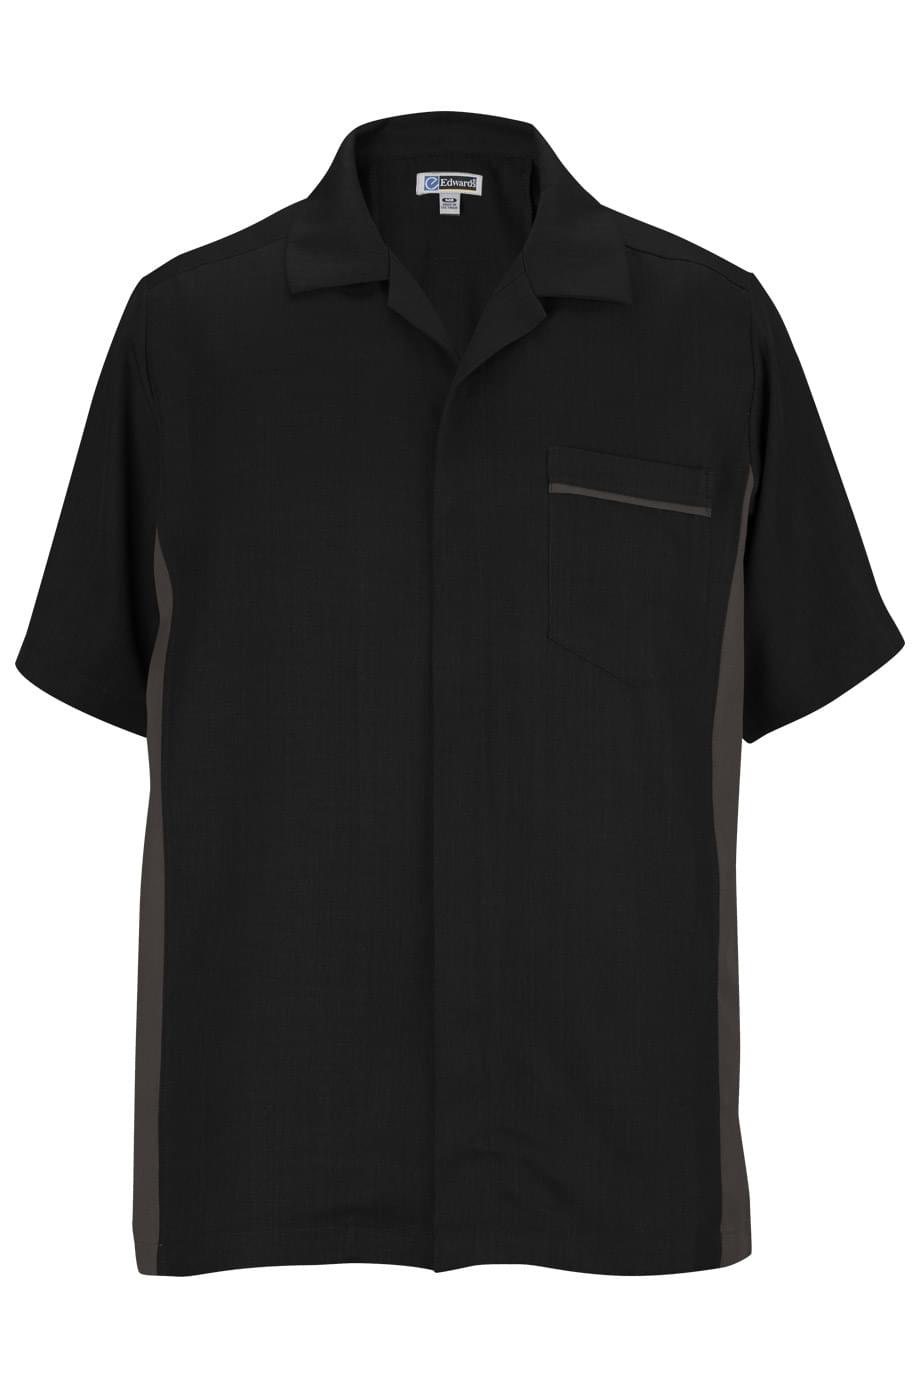 Edwards S Premier Men's Service Shirt - Black